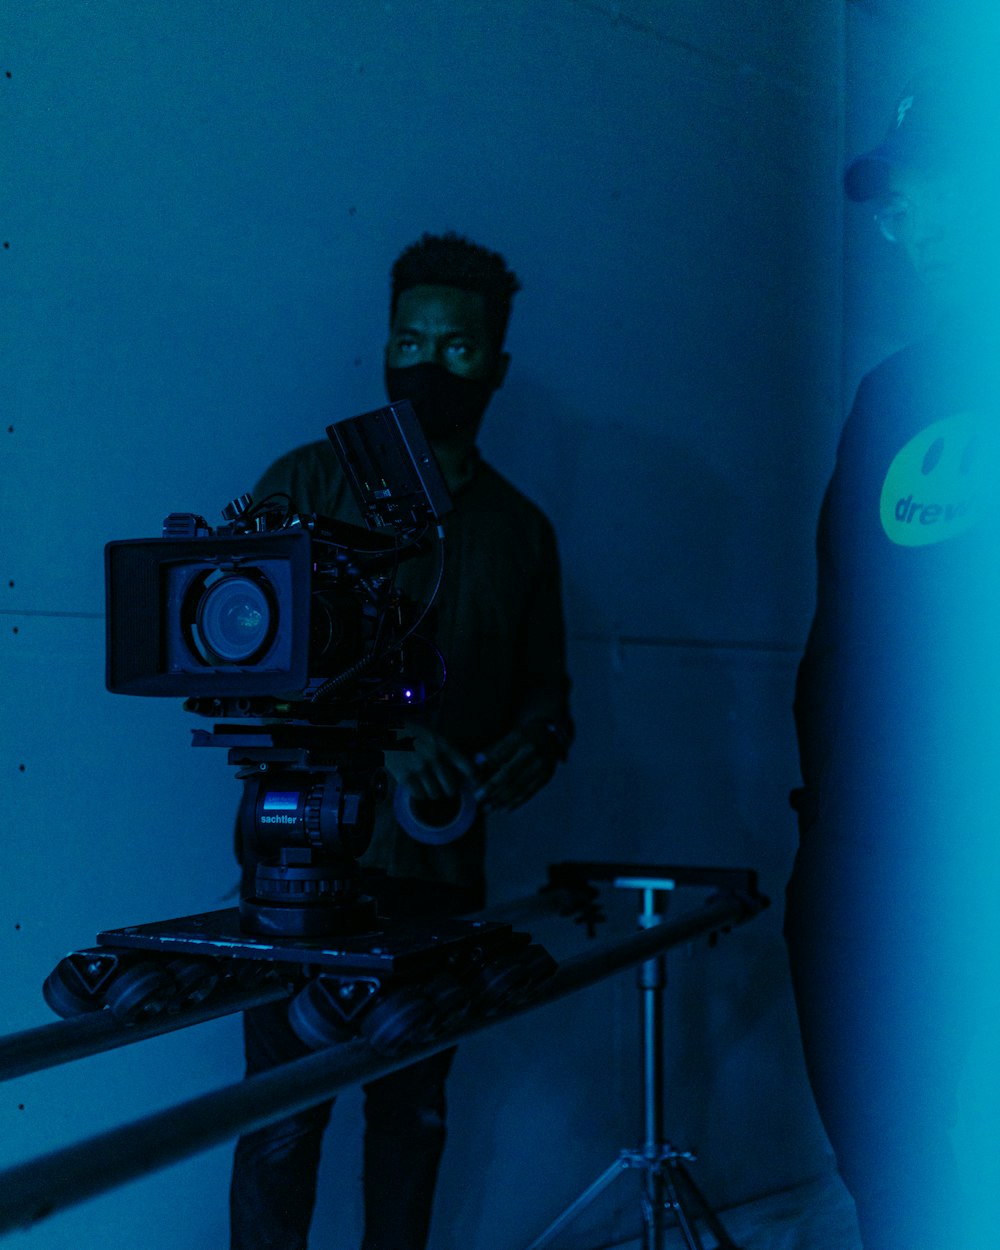 Un hombre sosteniendo una cámara en una habitación oscura